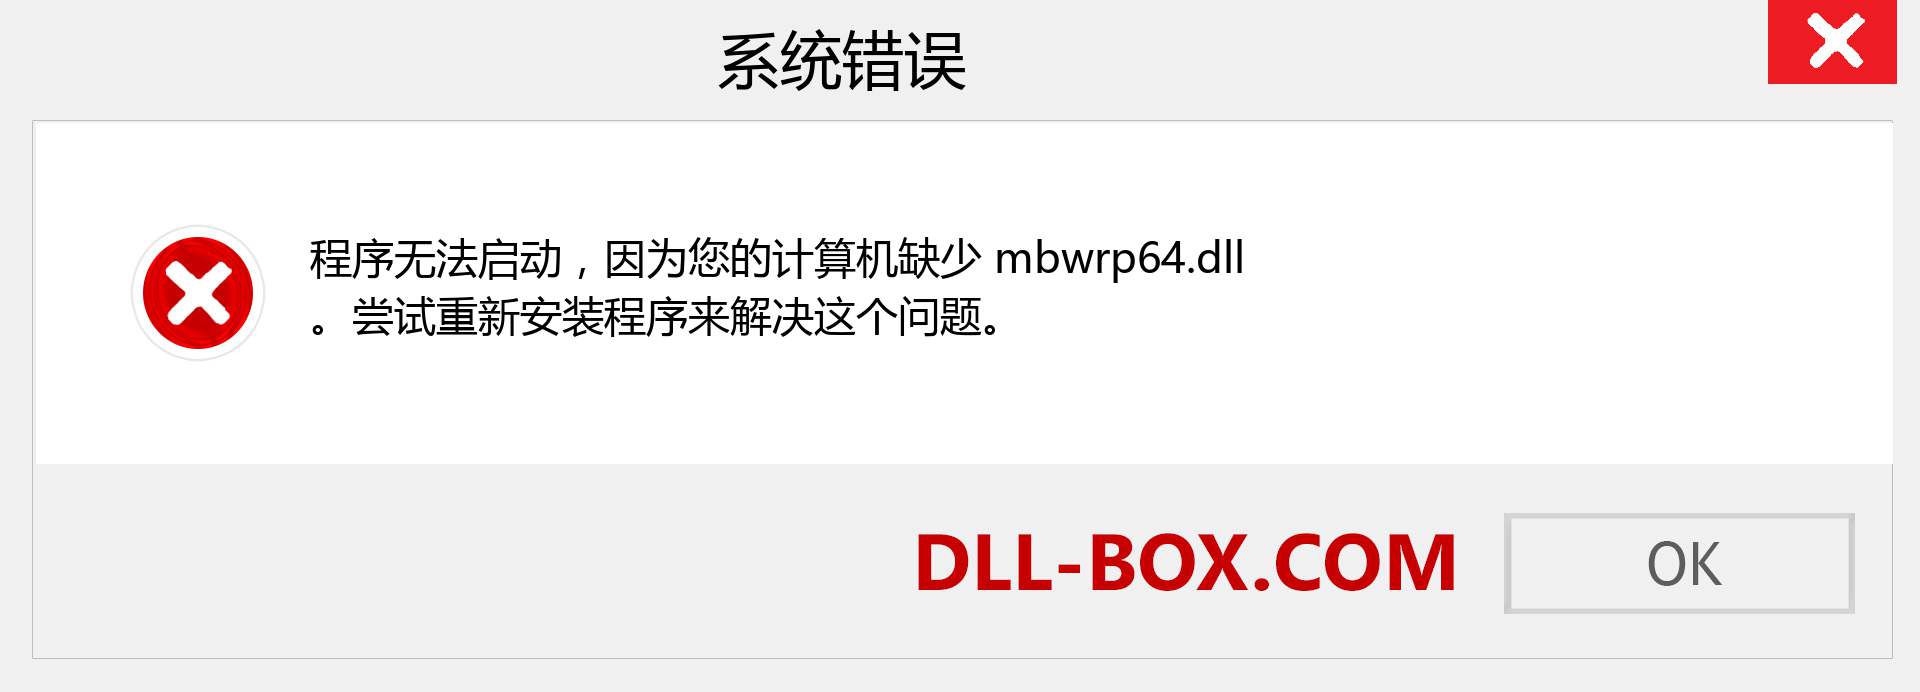 mbwrp64.dll 文件丢失？。 适用于 Windows 7、8、10 的下载 - 修复 Windows、照片、图像上的 mbwrp64 dll 丢失错误